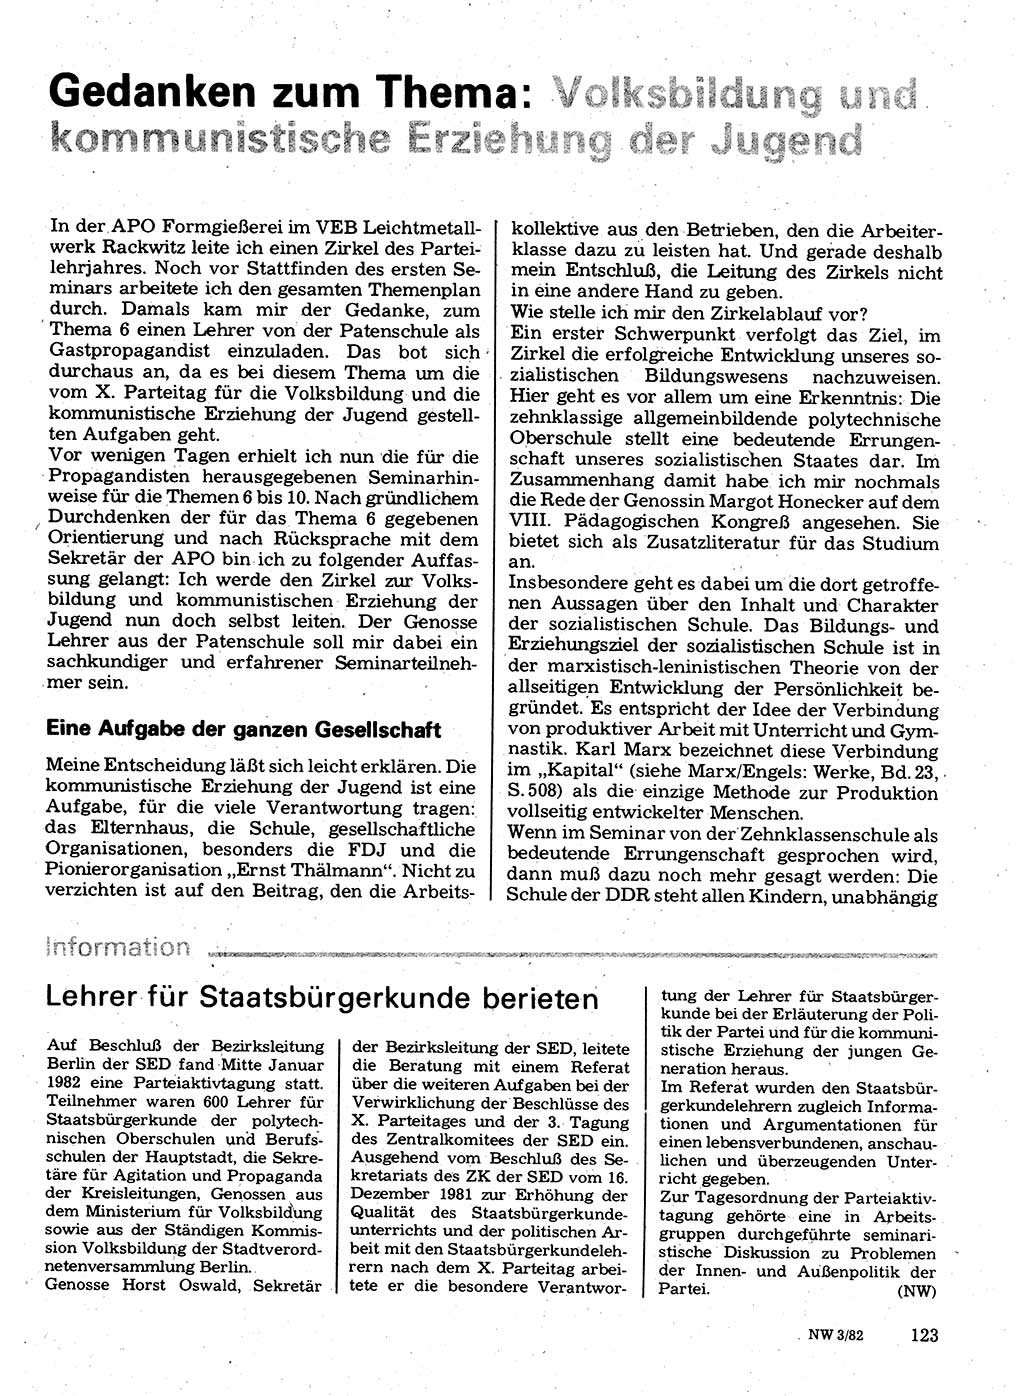 Neuer Weg (NW), Organ des Zentralkomitees (ZK) der SED (Sozialistische Einheitspartei Deutschlands) für Fragen des Parteilebens, 37. Jahrgang [Deutsche Demokratische Republik (DDR)] 1982, Seite 123 (NW ZK SED DDR 1982, S. 123)